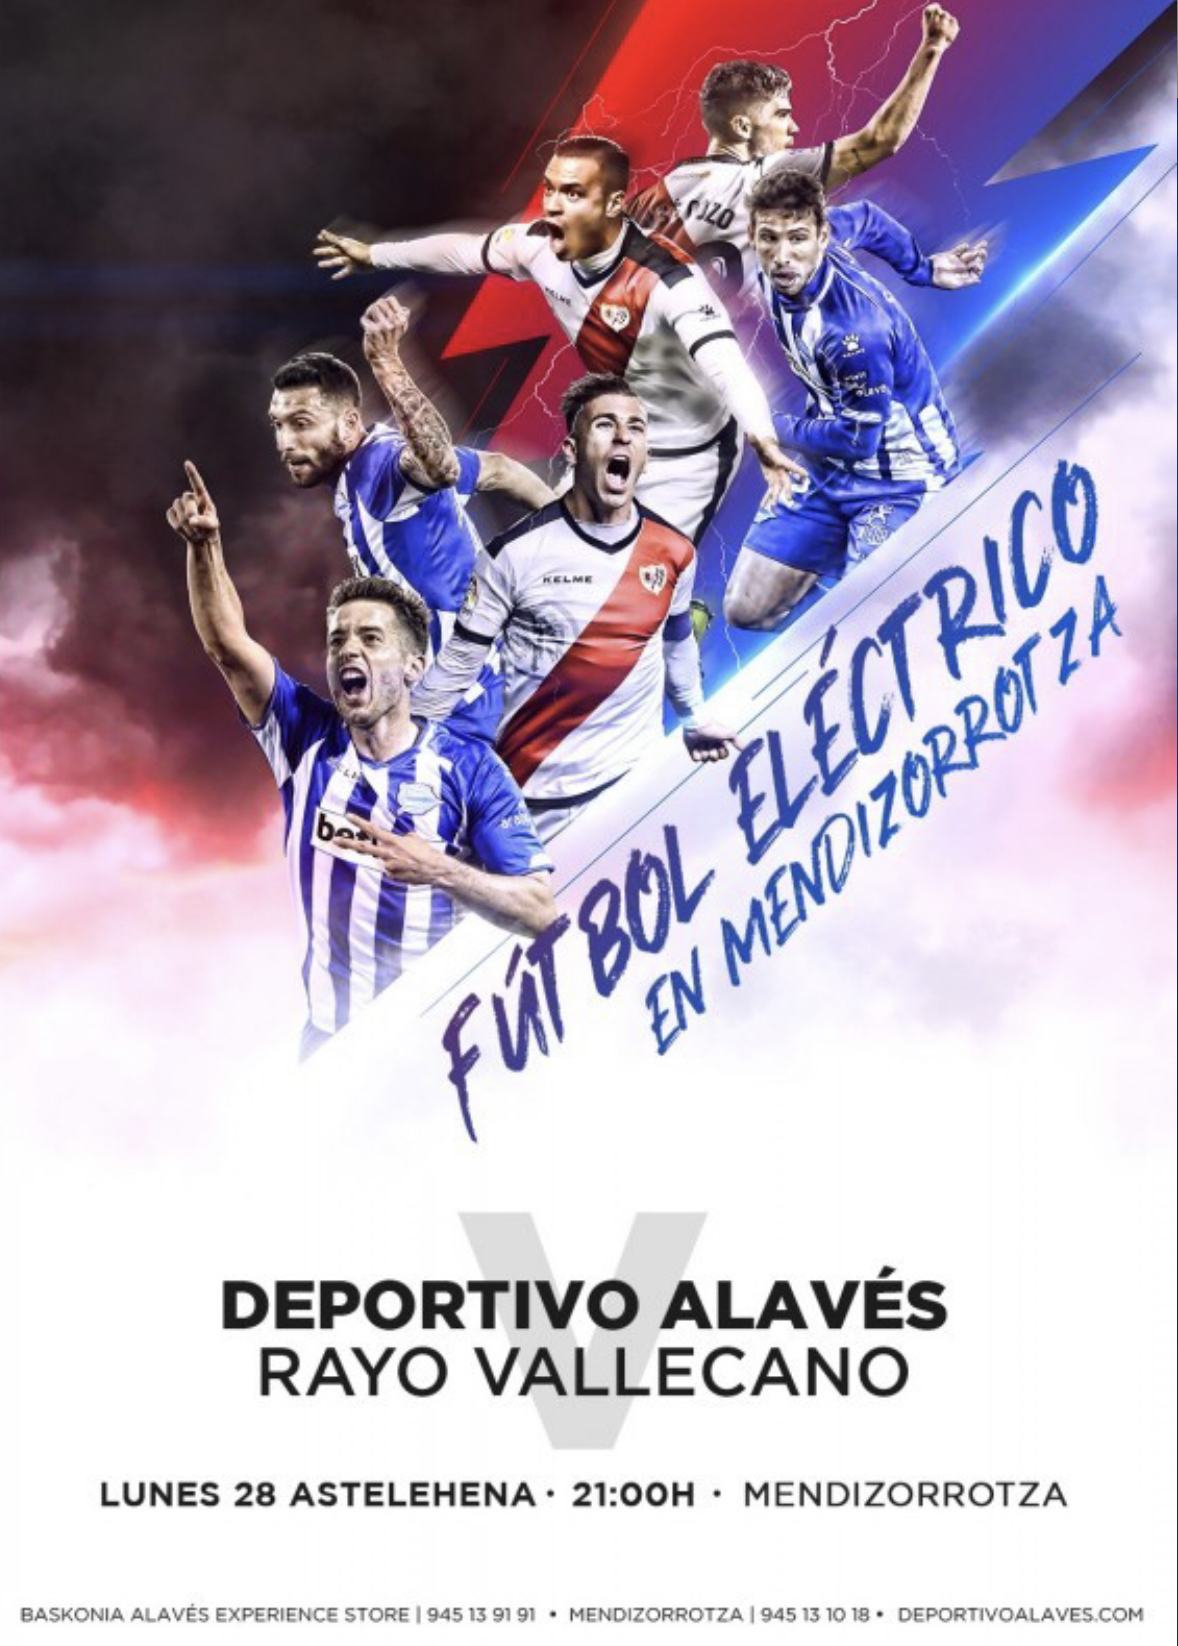 Equipo que renovó plaza de forma anticipada para la temporada 18/19 y que por ello ha resultado premiado con dos entradas para asistir en directo y de forma gratuita al encuentro de Fútbol de la Liga Santander, entre Deportivo Alavés y Rayo Vallecano.